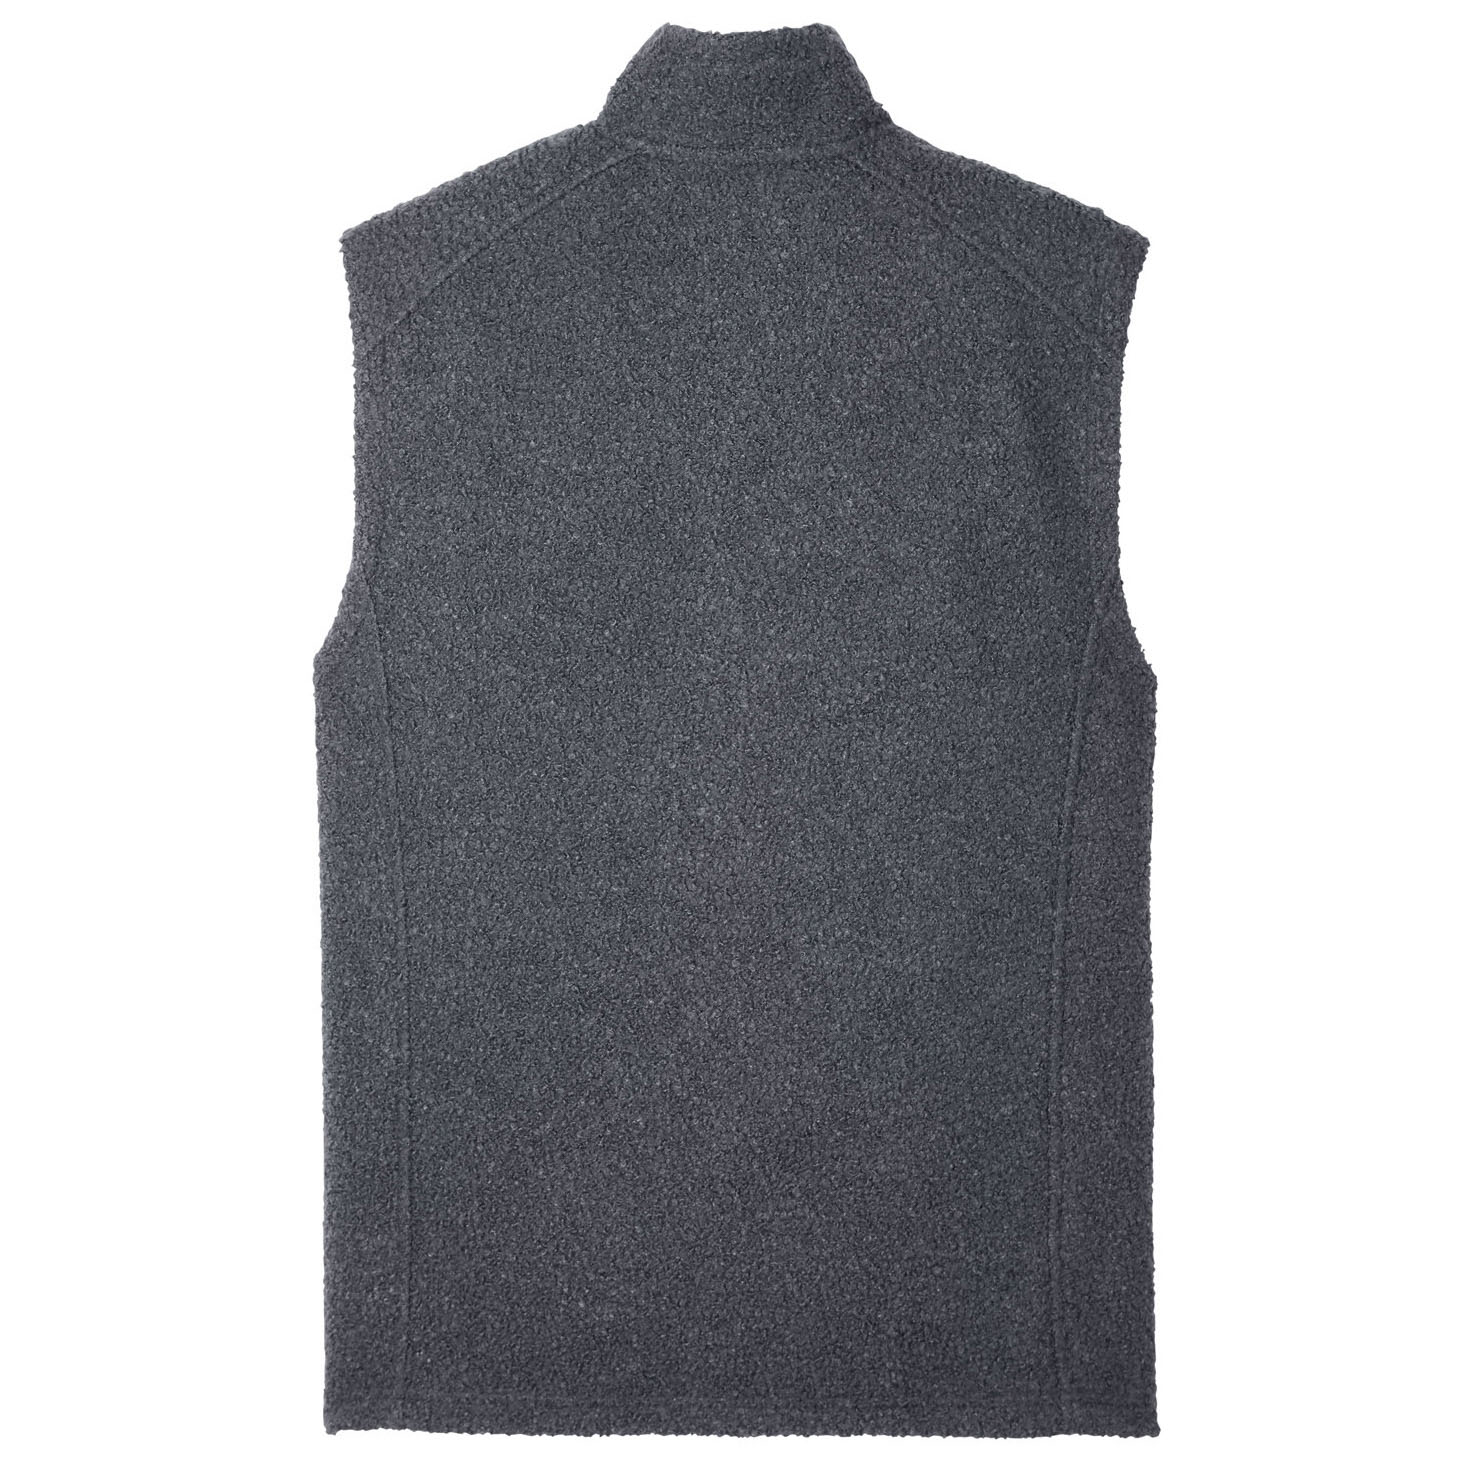 North End NE714 Men's Aura Sweater Fleece Vest - Carbon/Carbon | Full ...